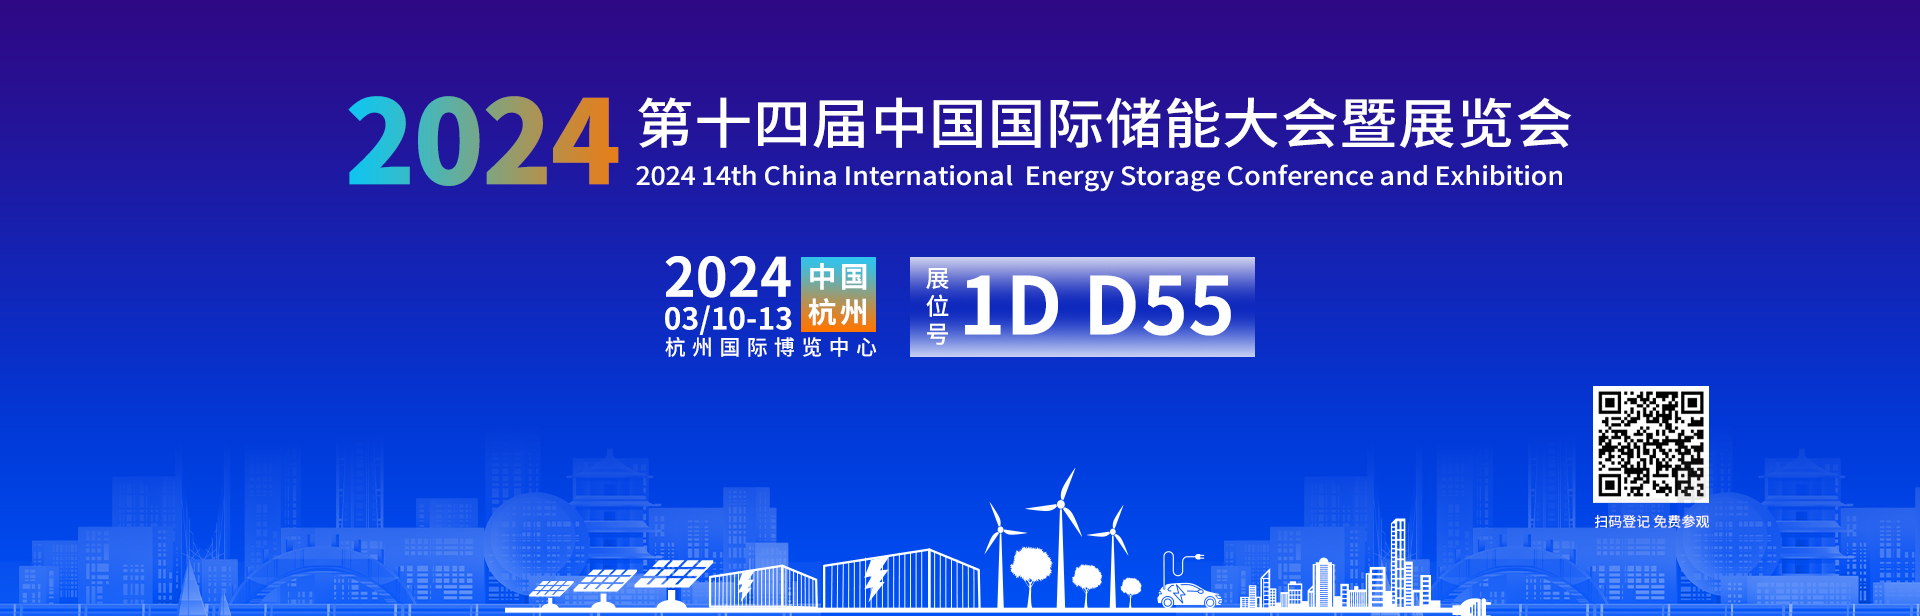 第十四屆中國國際儲能大會暨展覽會